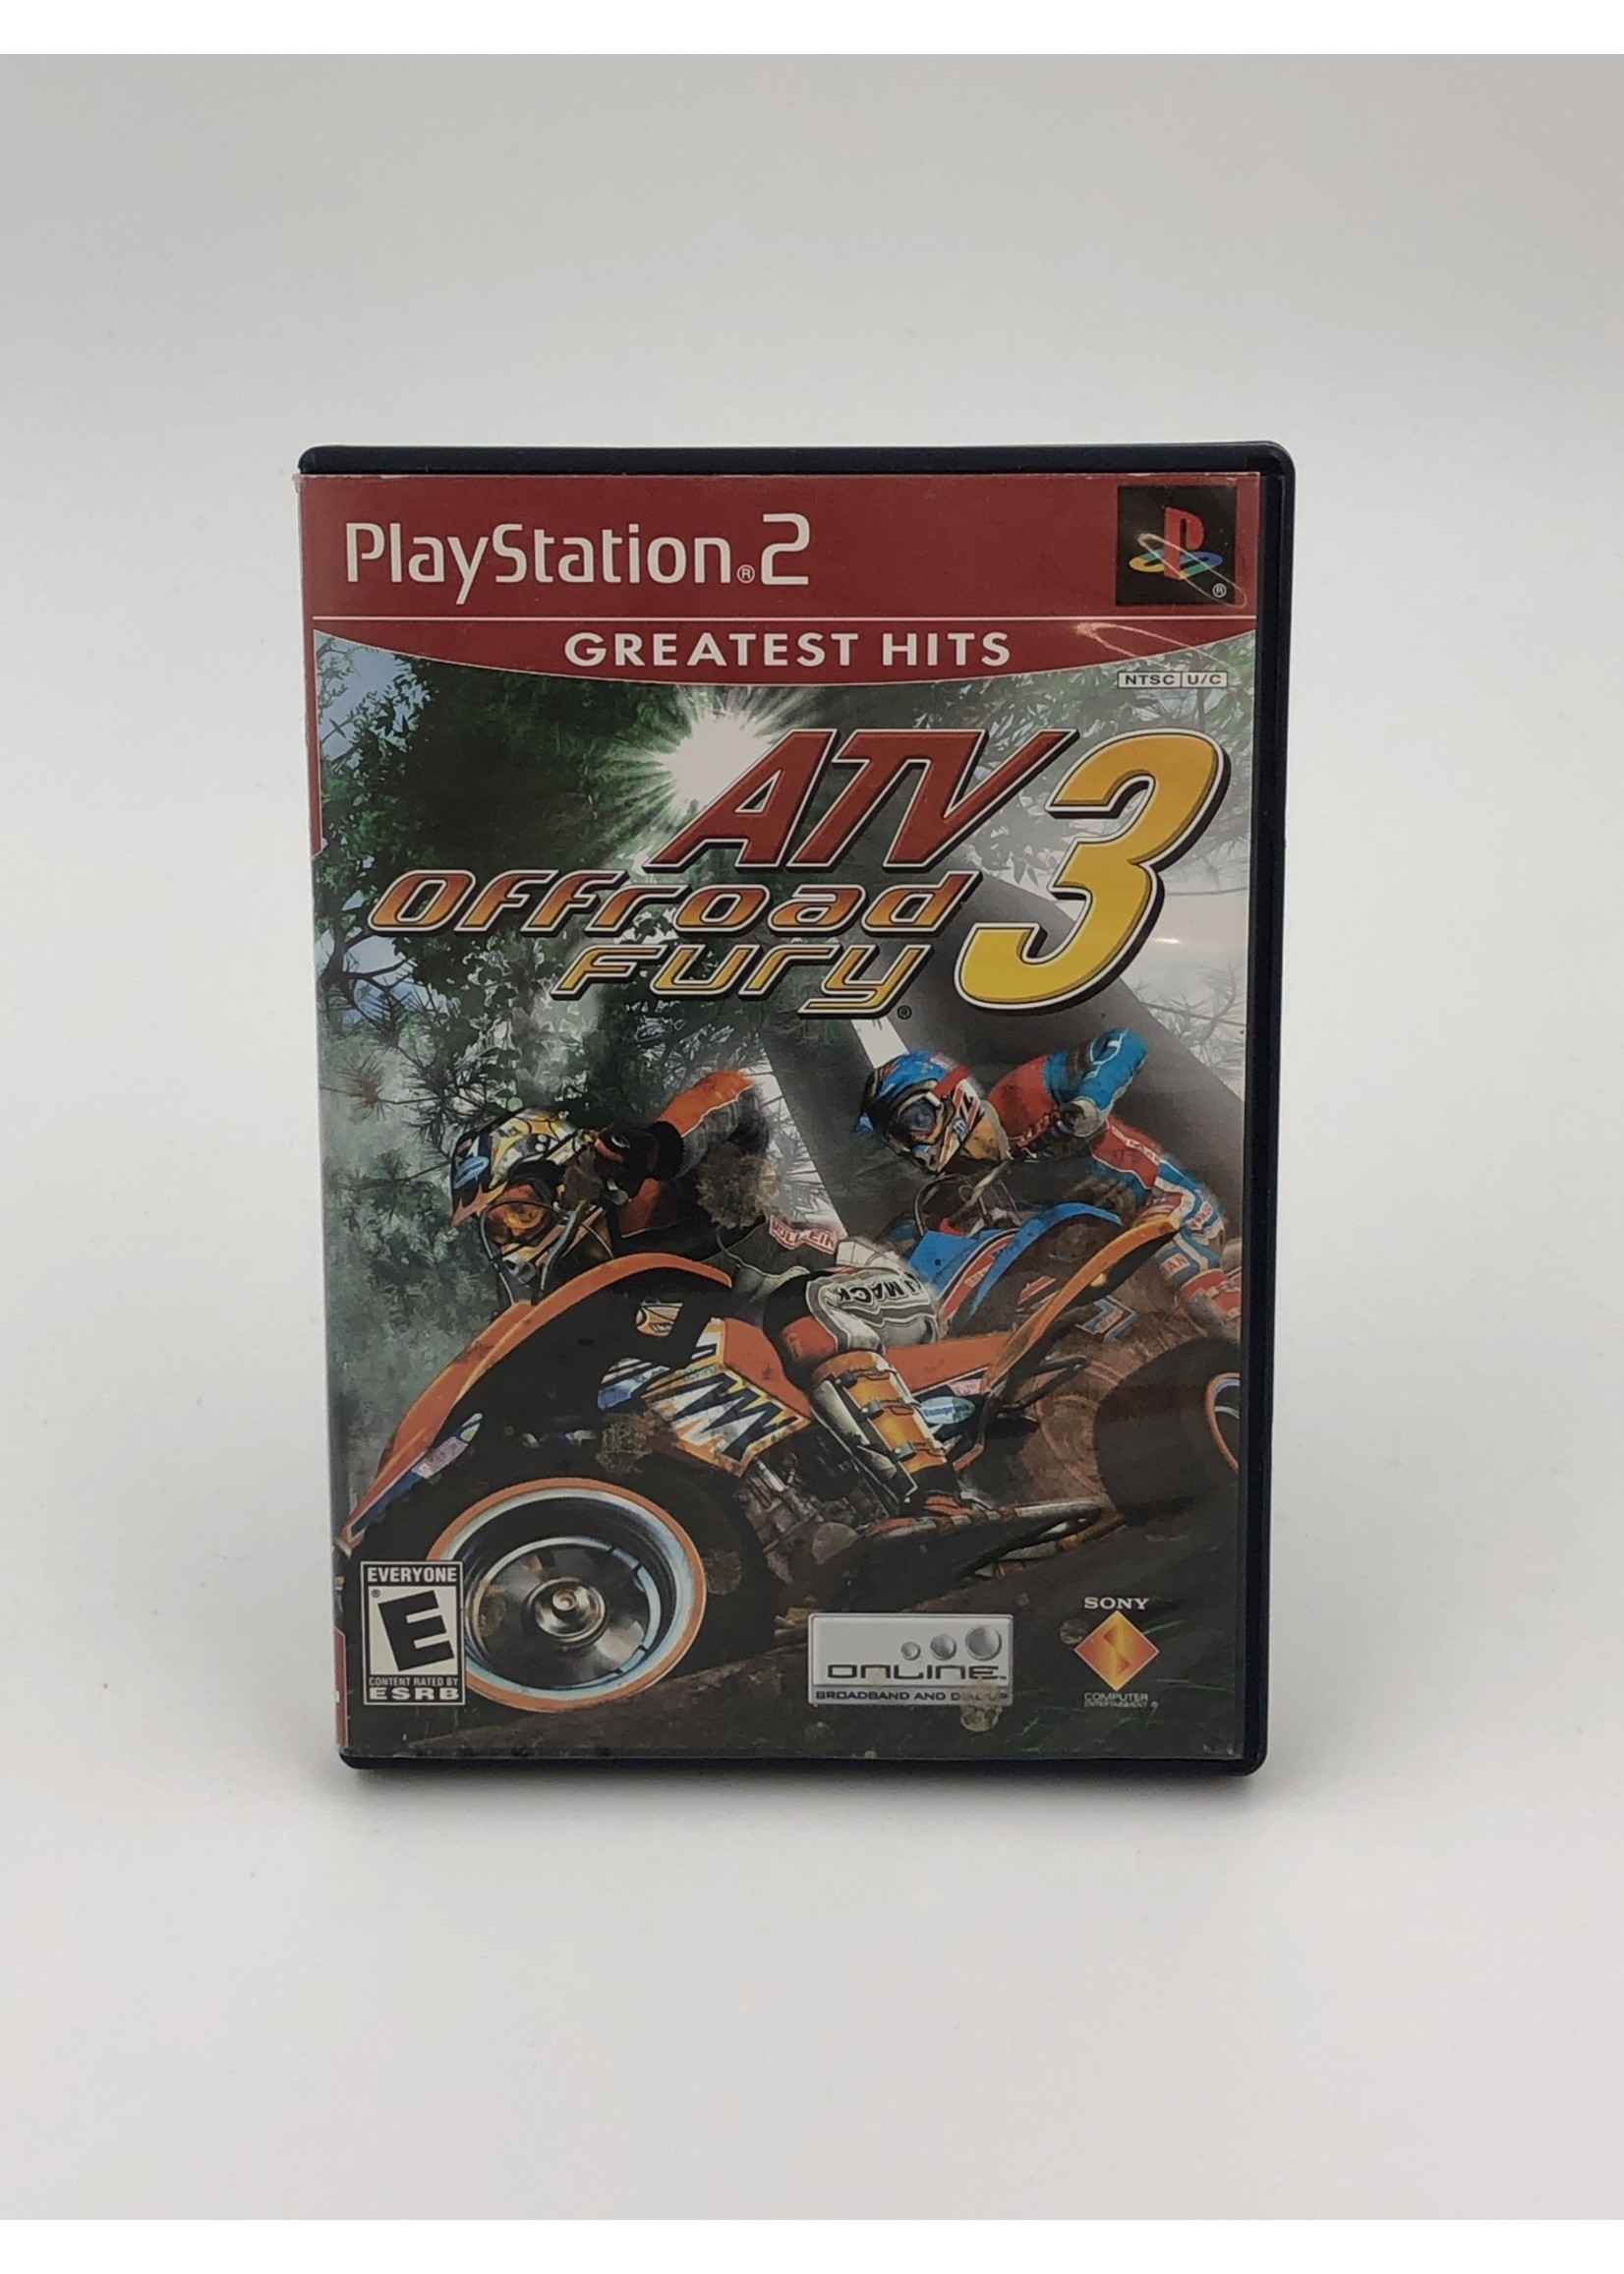 Sony ATV Offroad Fury 3 - PS2